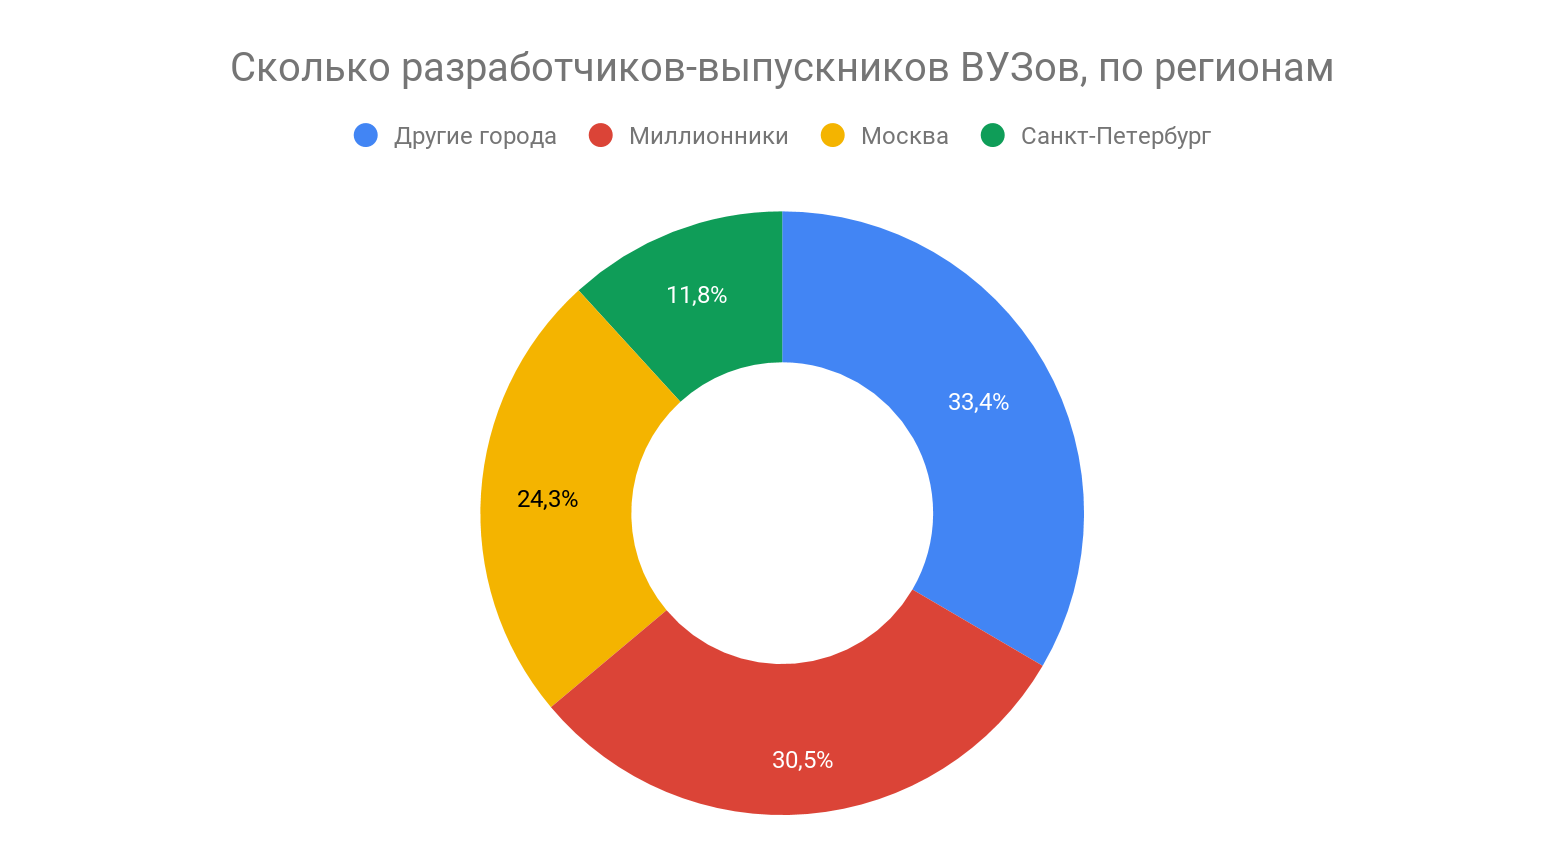 Сколько зарабатывают выпускники разных российских ВУЗов - 2